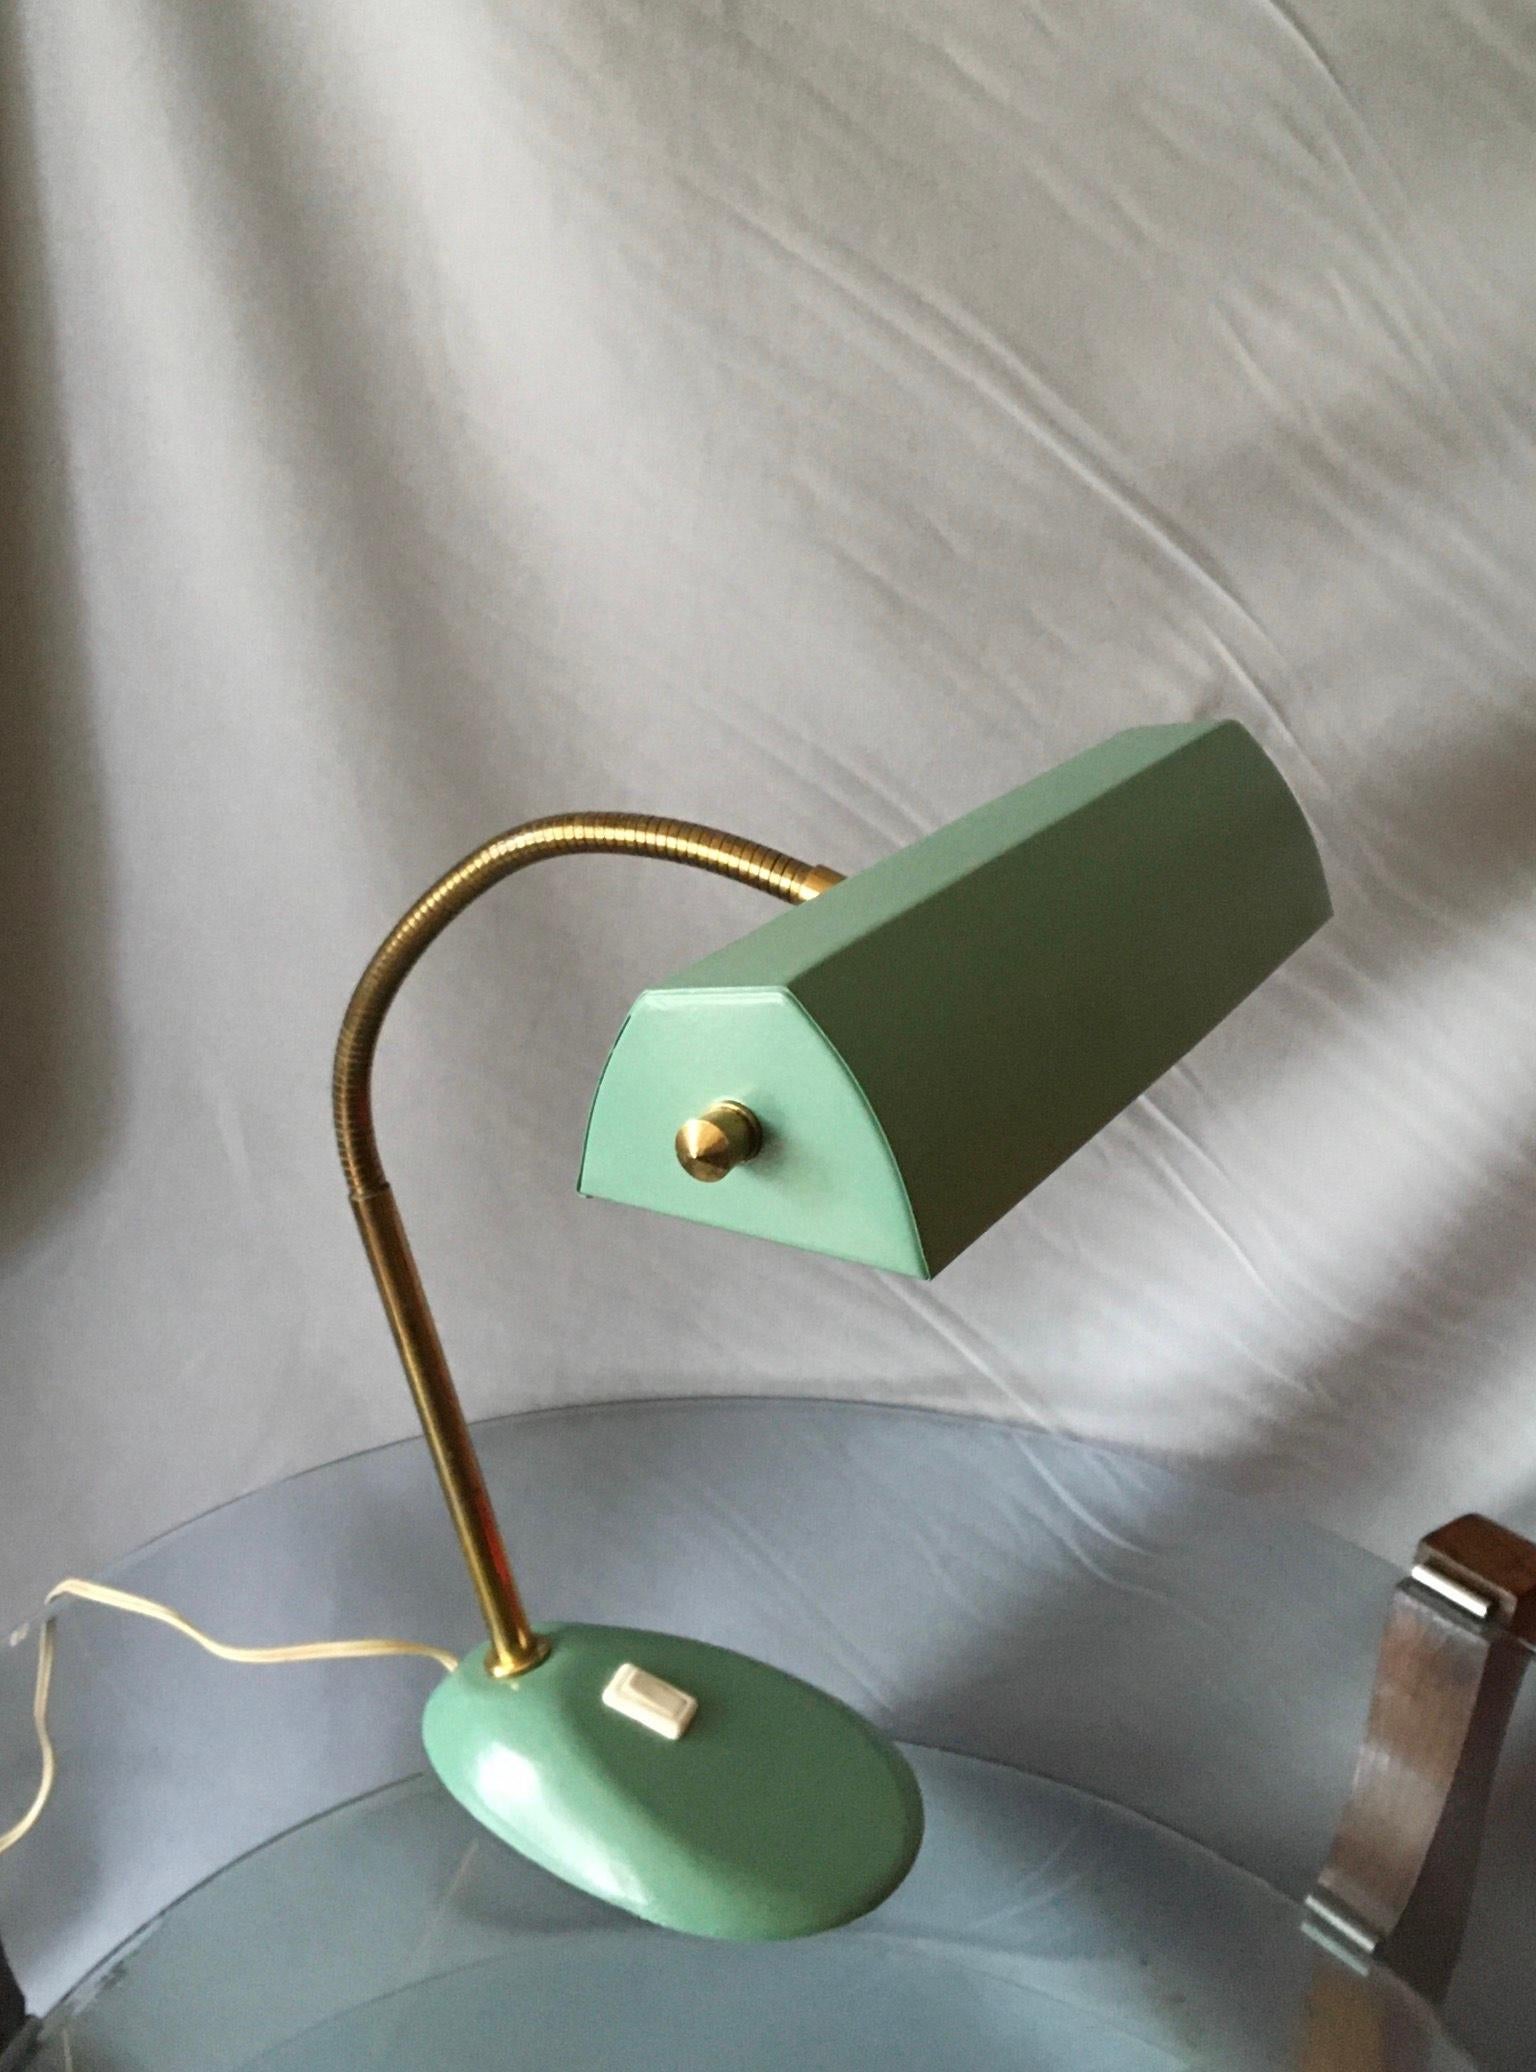 Belle lampe de design français du milieu des années 50, laquée vert céladon (vert surf).
Le réflecteur multidirectionnel est monté sur un bras flexible en laiton fixé sur une base en fonte pour une stabilité maximale.
Les parties électriques ont